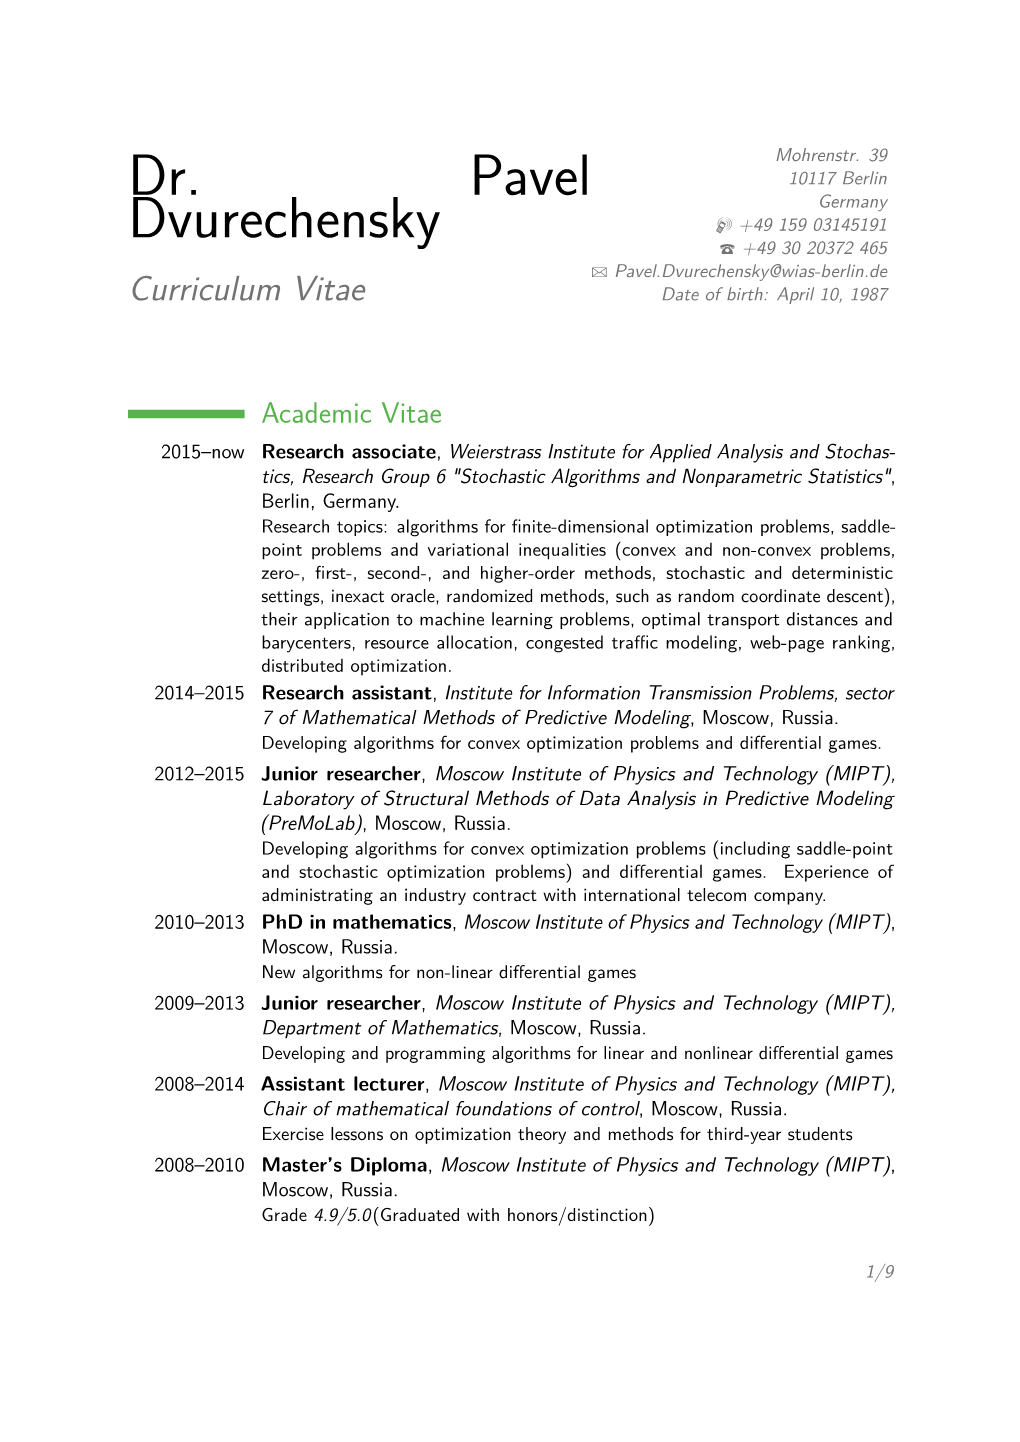 Dr. Pavel Dvurechensky – Curriculum Vitae